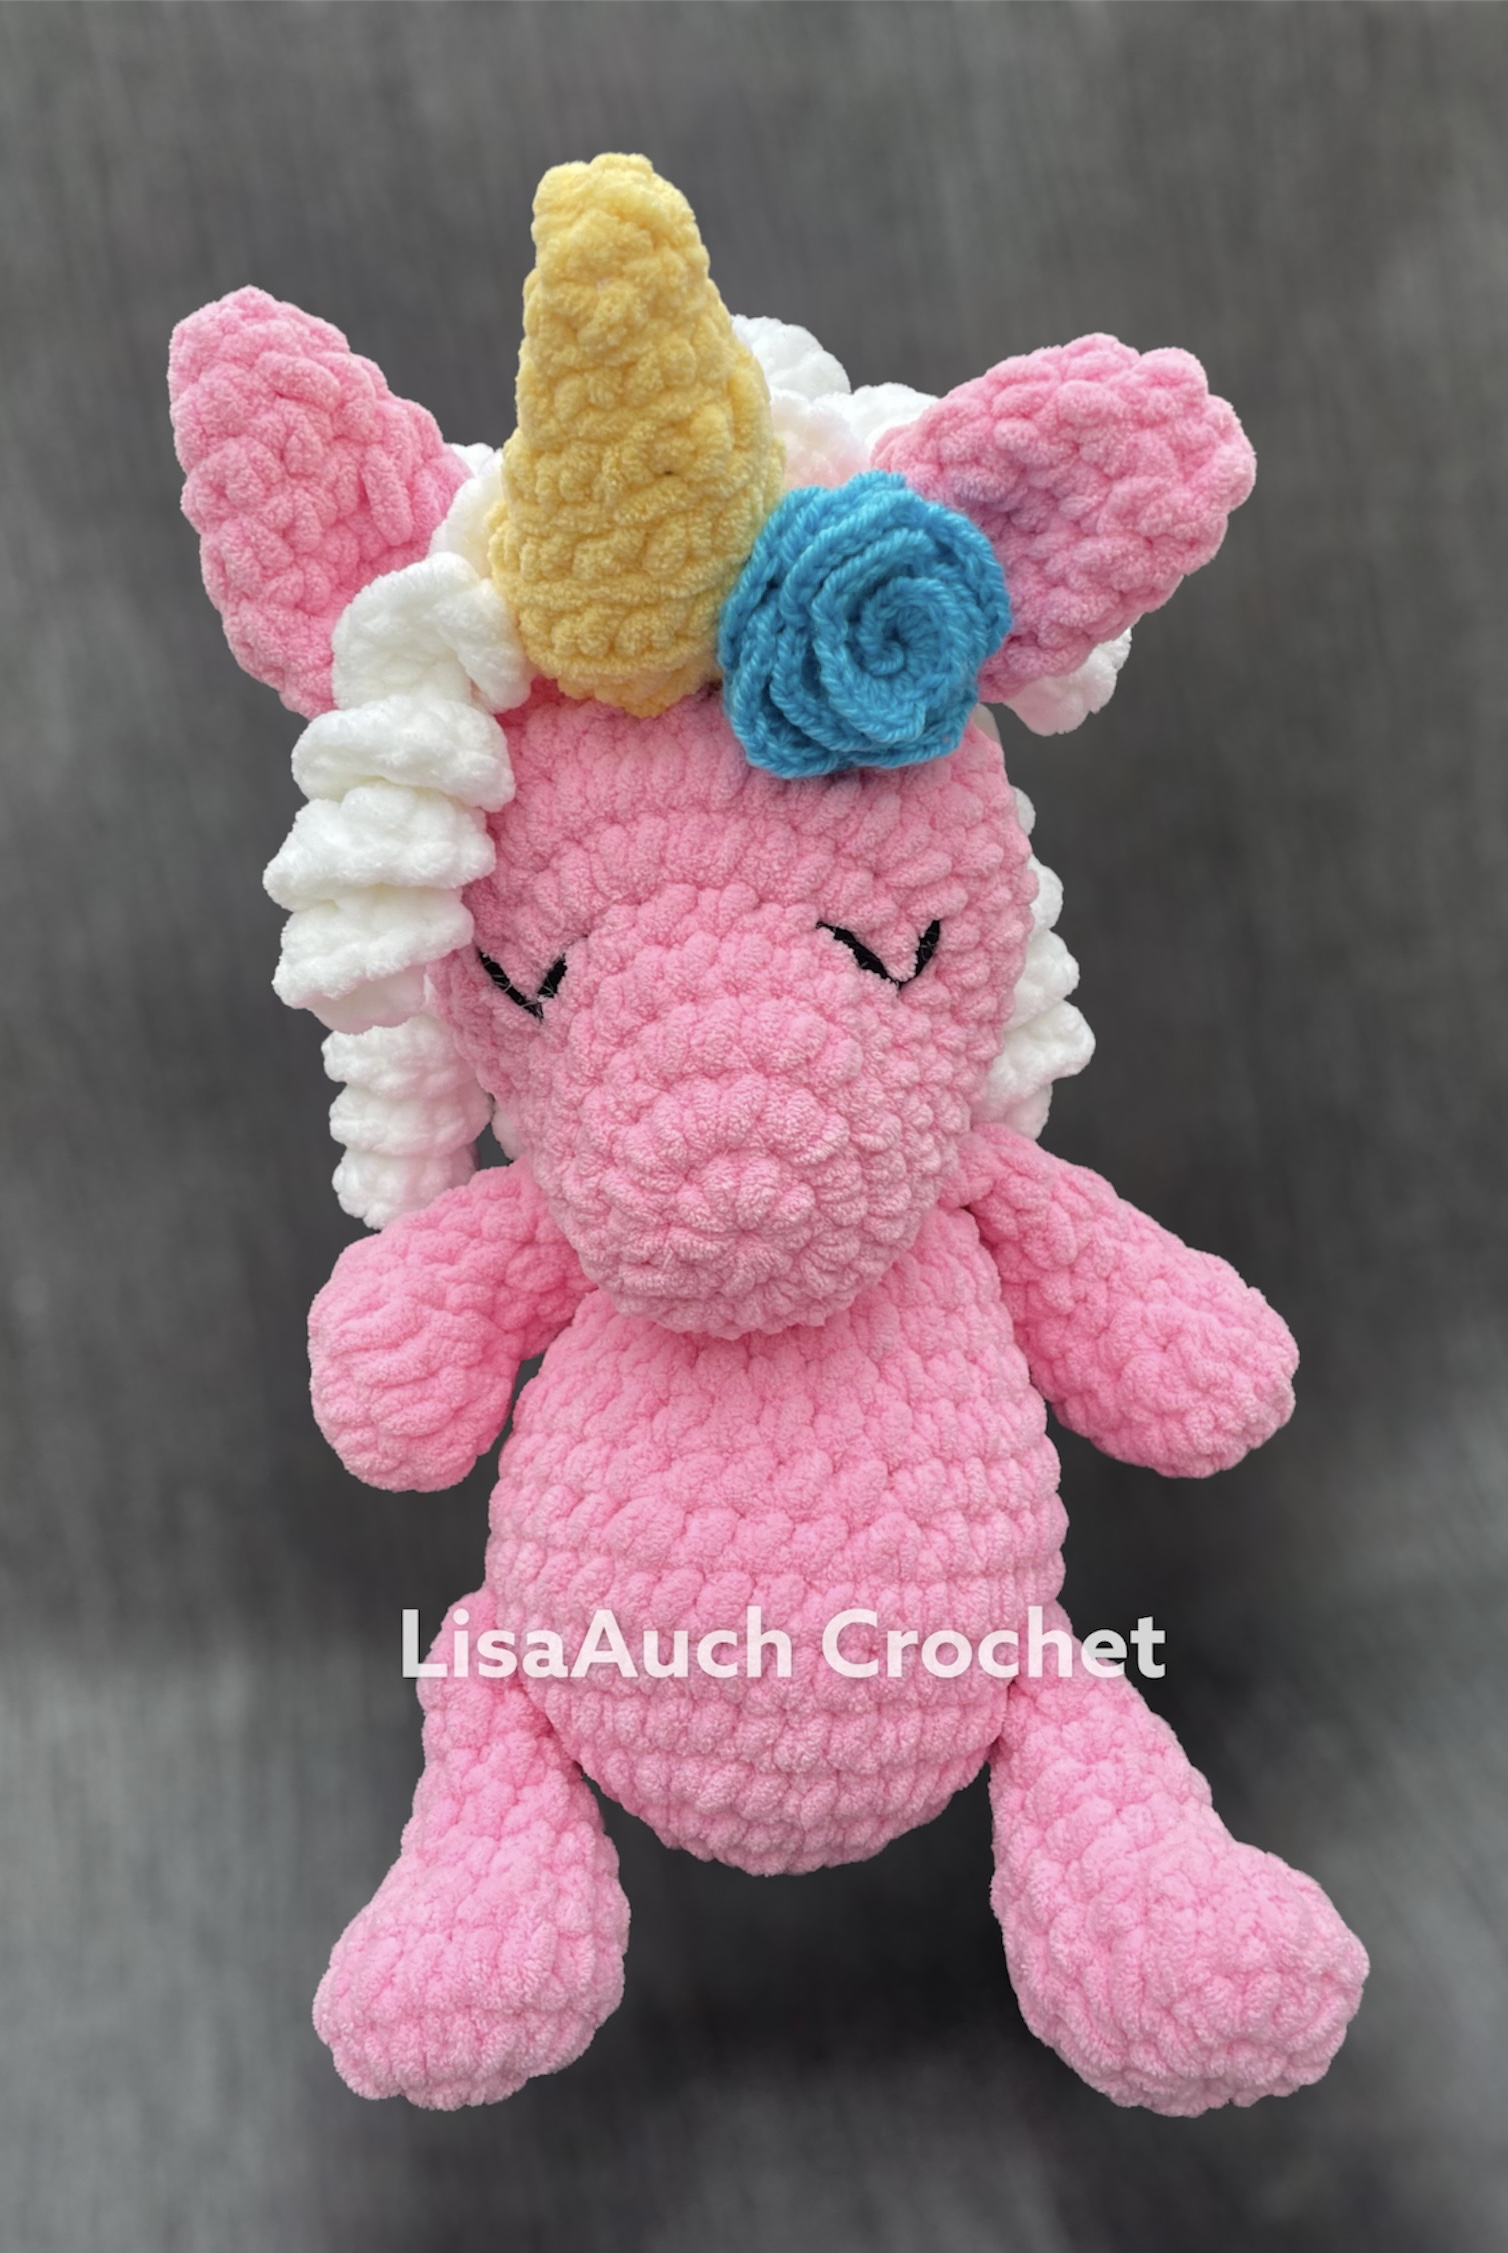 Plush Stuffed Unicorn Amigurumi Crochet Toy Pattern 